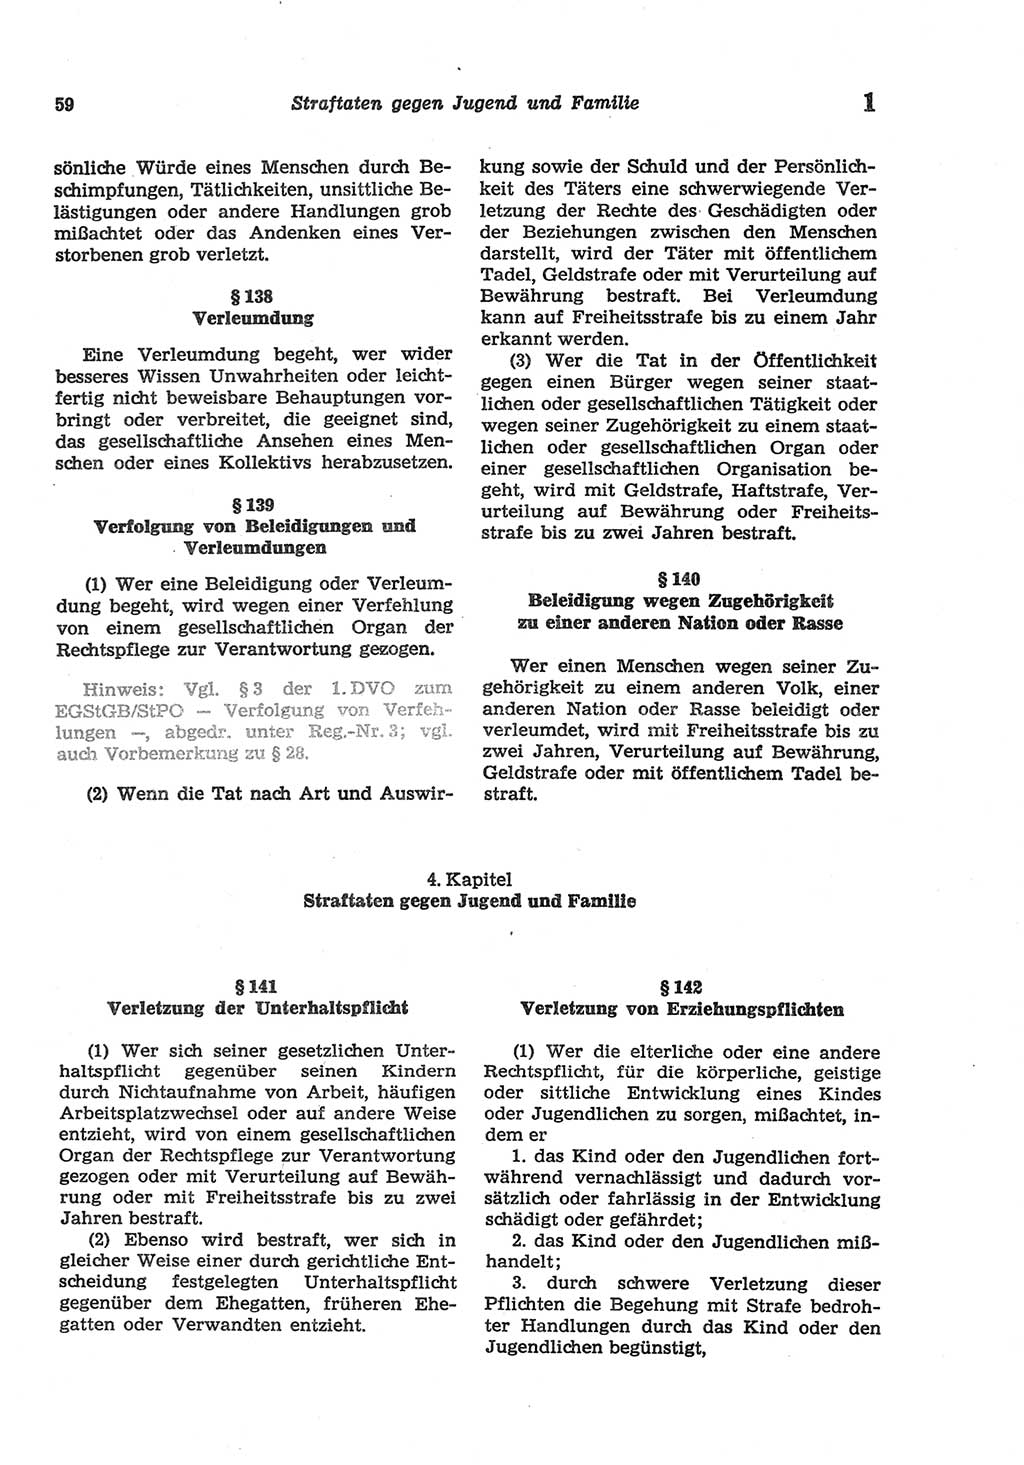 Strafgesetzbuch (StGB) der Deutschen Demokratischen Republik (DDR) und angrenzende Gesetze und Bestimmungen 1977, Seite 59 (StGB DDR Ges. Best. 1977, S. 59)